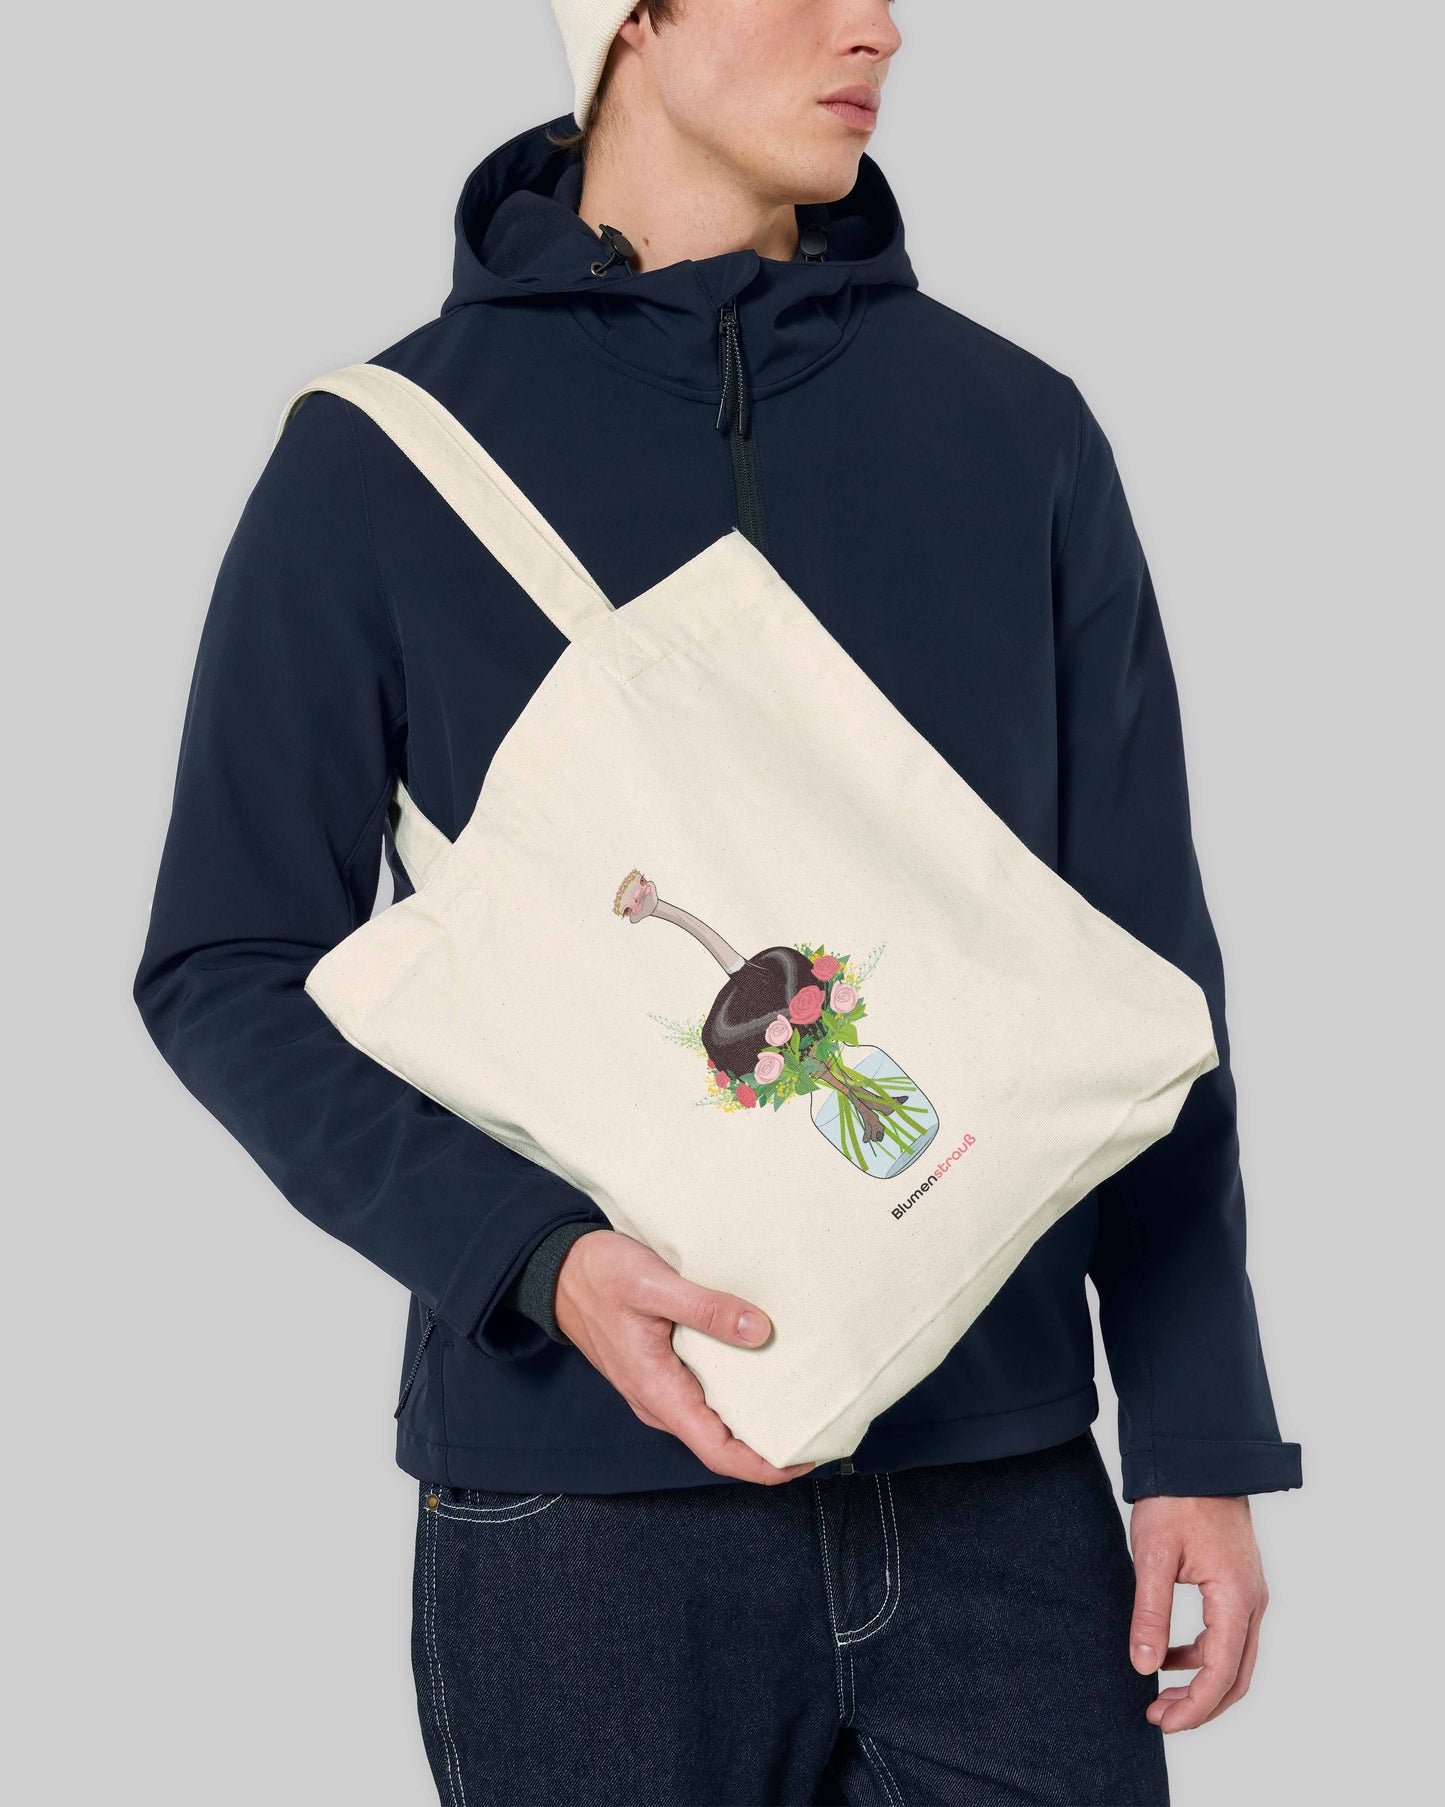 EINHORST® Stofftasche in der Farbe "Natural" mit dem Motiv "Blumenstrauß", Bild von männlicher Person mit Stofftasche